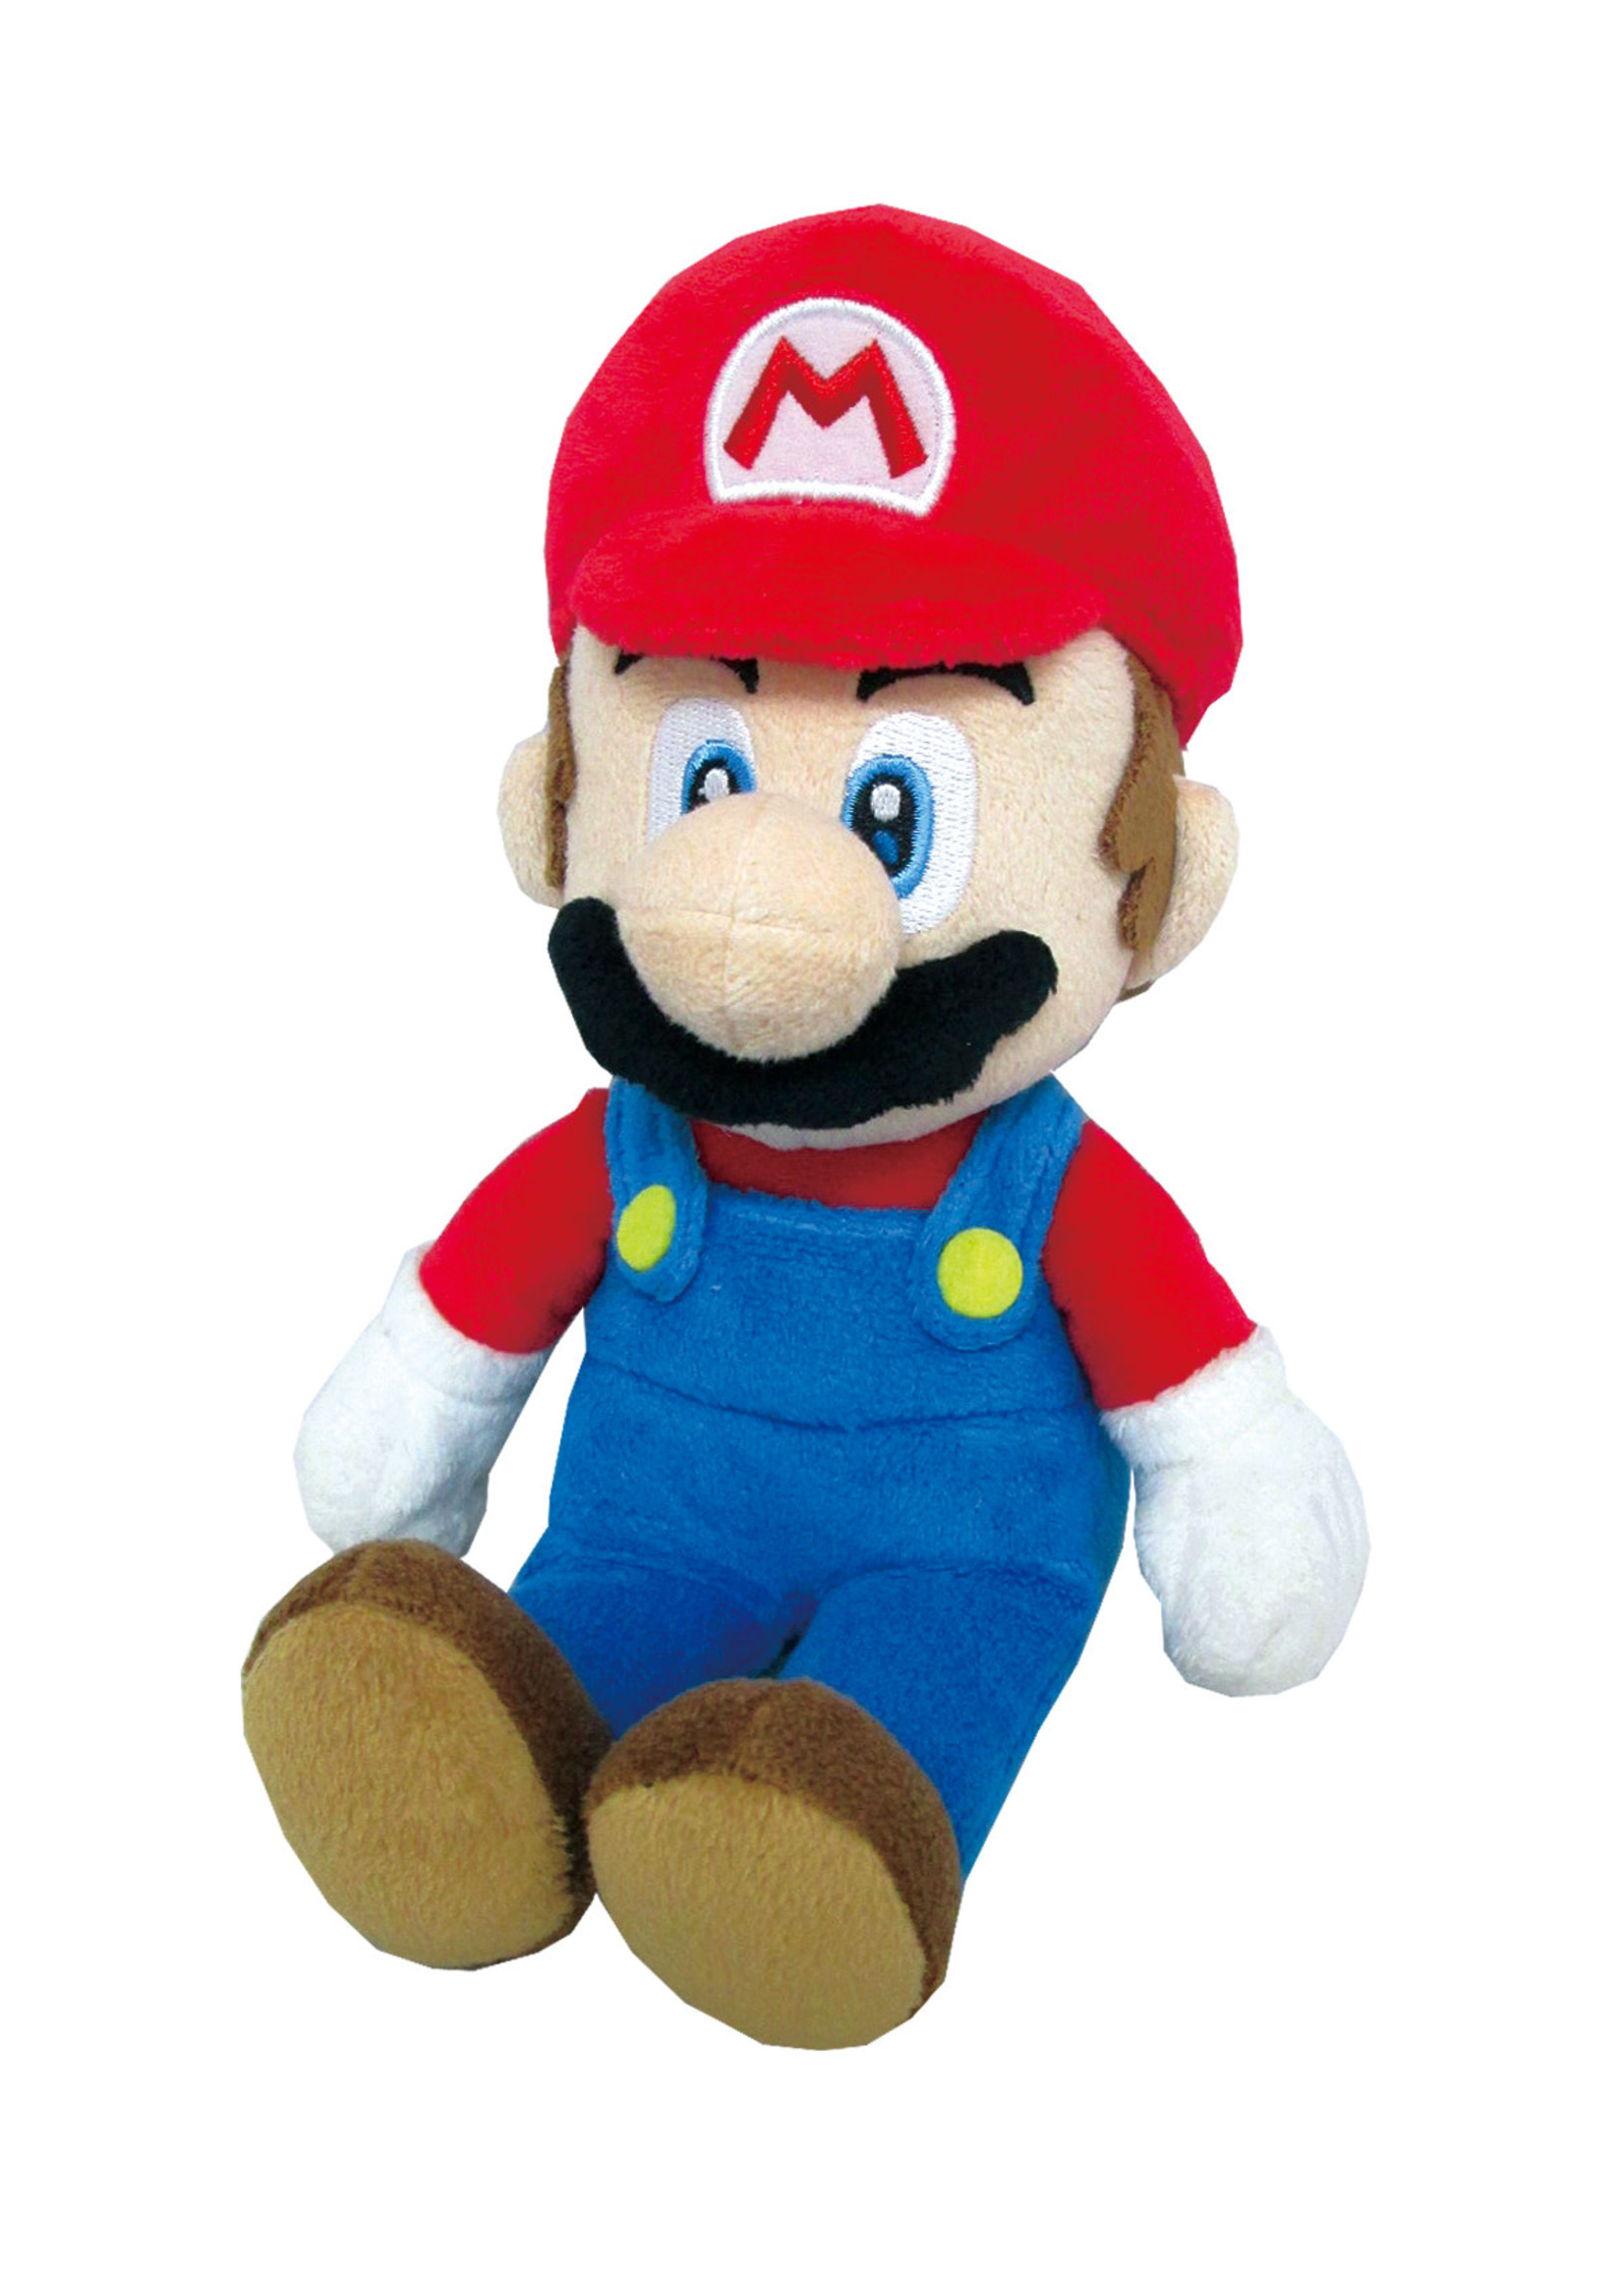 Nintendo Super Mario - Mario plush